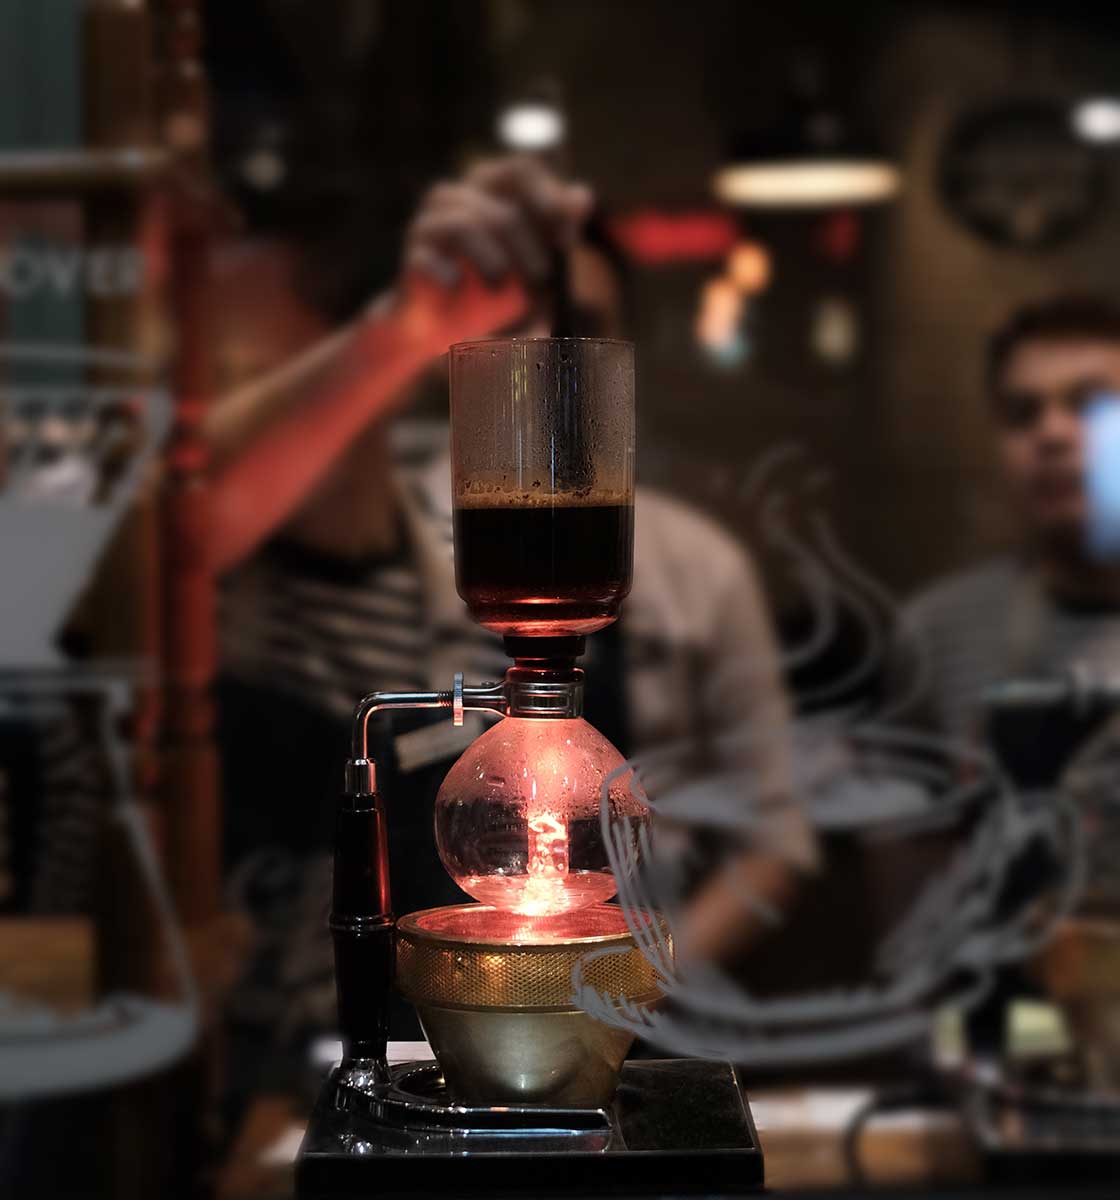 Kalabalık bir insan grubunun önünde filtre kahve demlenen Syphon kahve demleme ekipmanı.